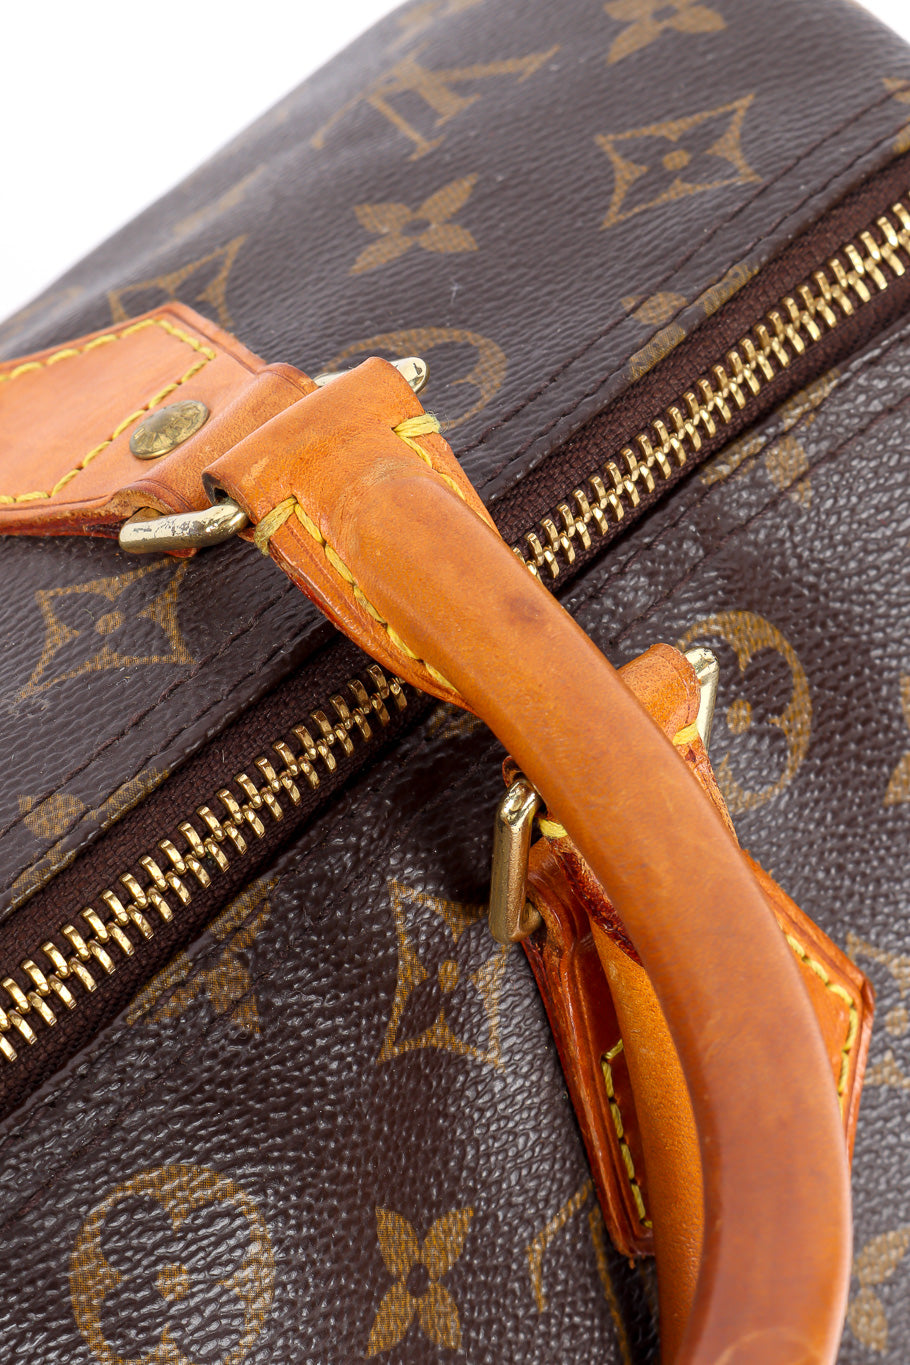 Louis Vuitton classic monogram speedy 30 bag leather details @recessla